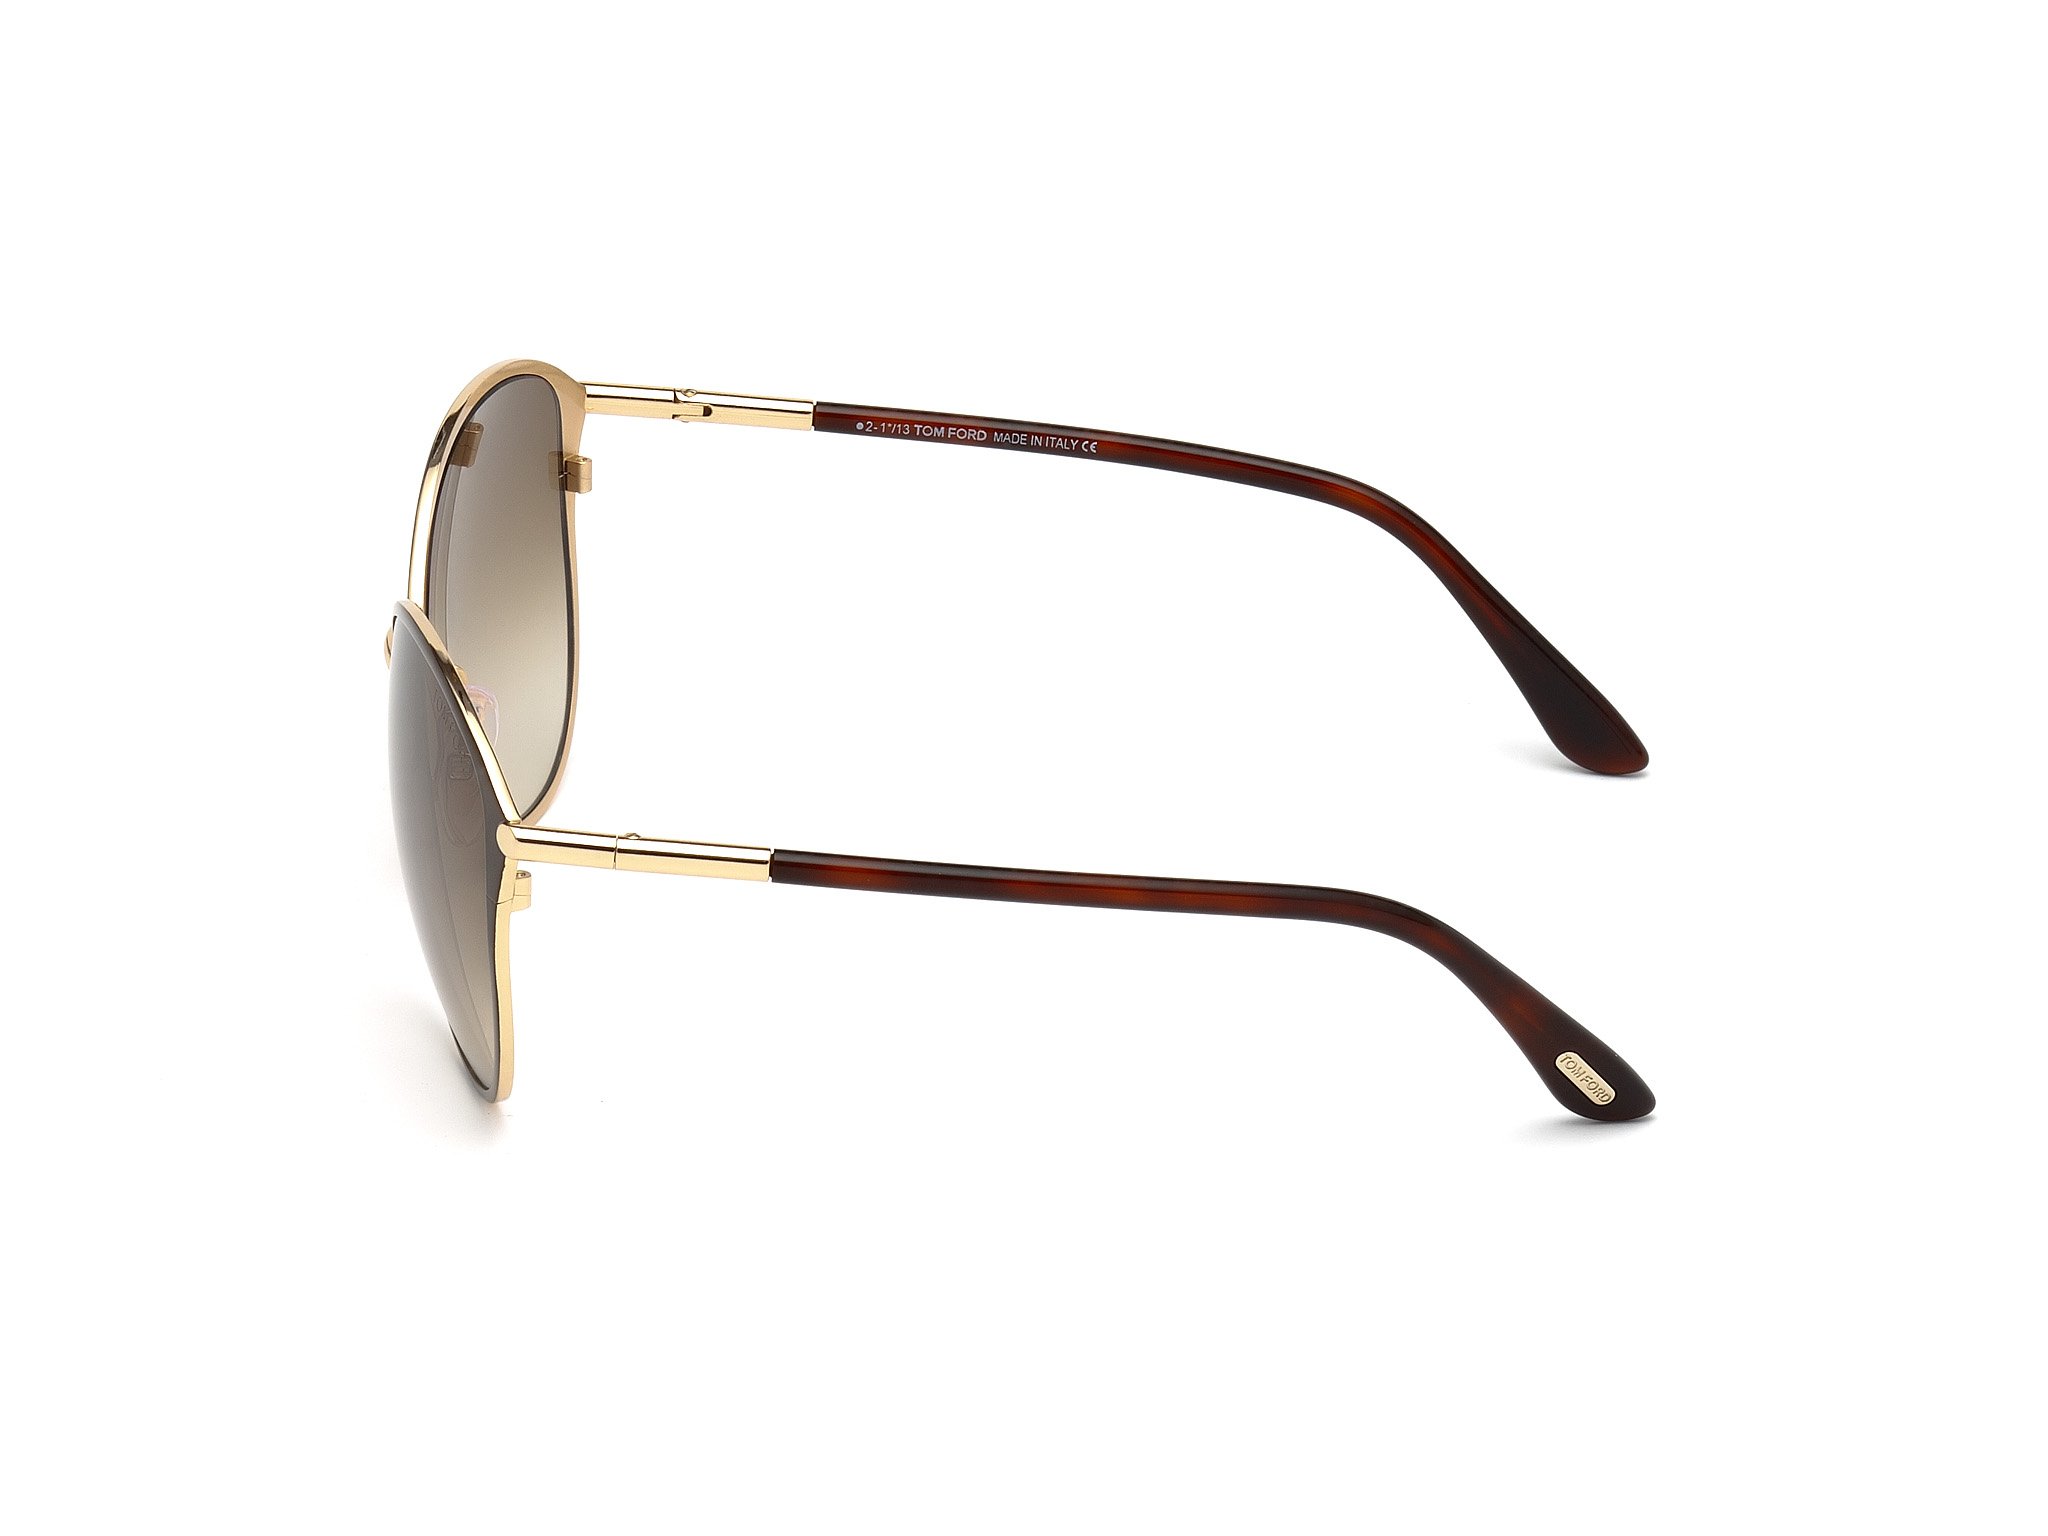 Das Bild zeigt die Sonnenbrille Penelope FT0320 von der Marke Tom Ford in schwarz gold seitlich